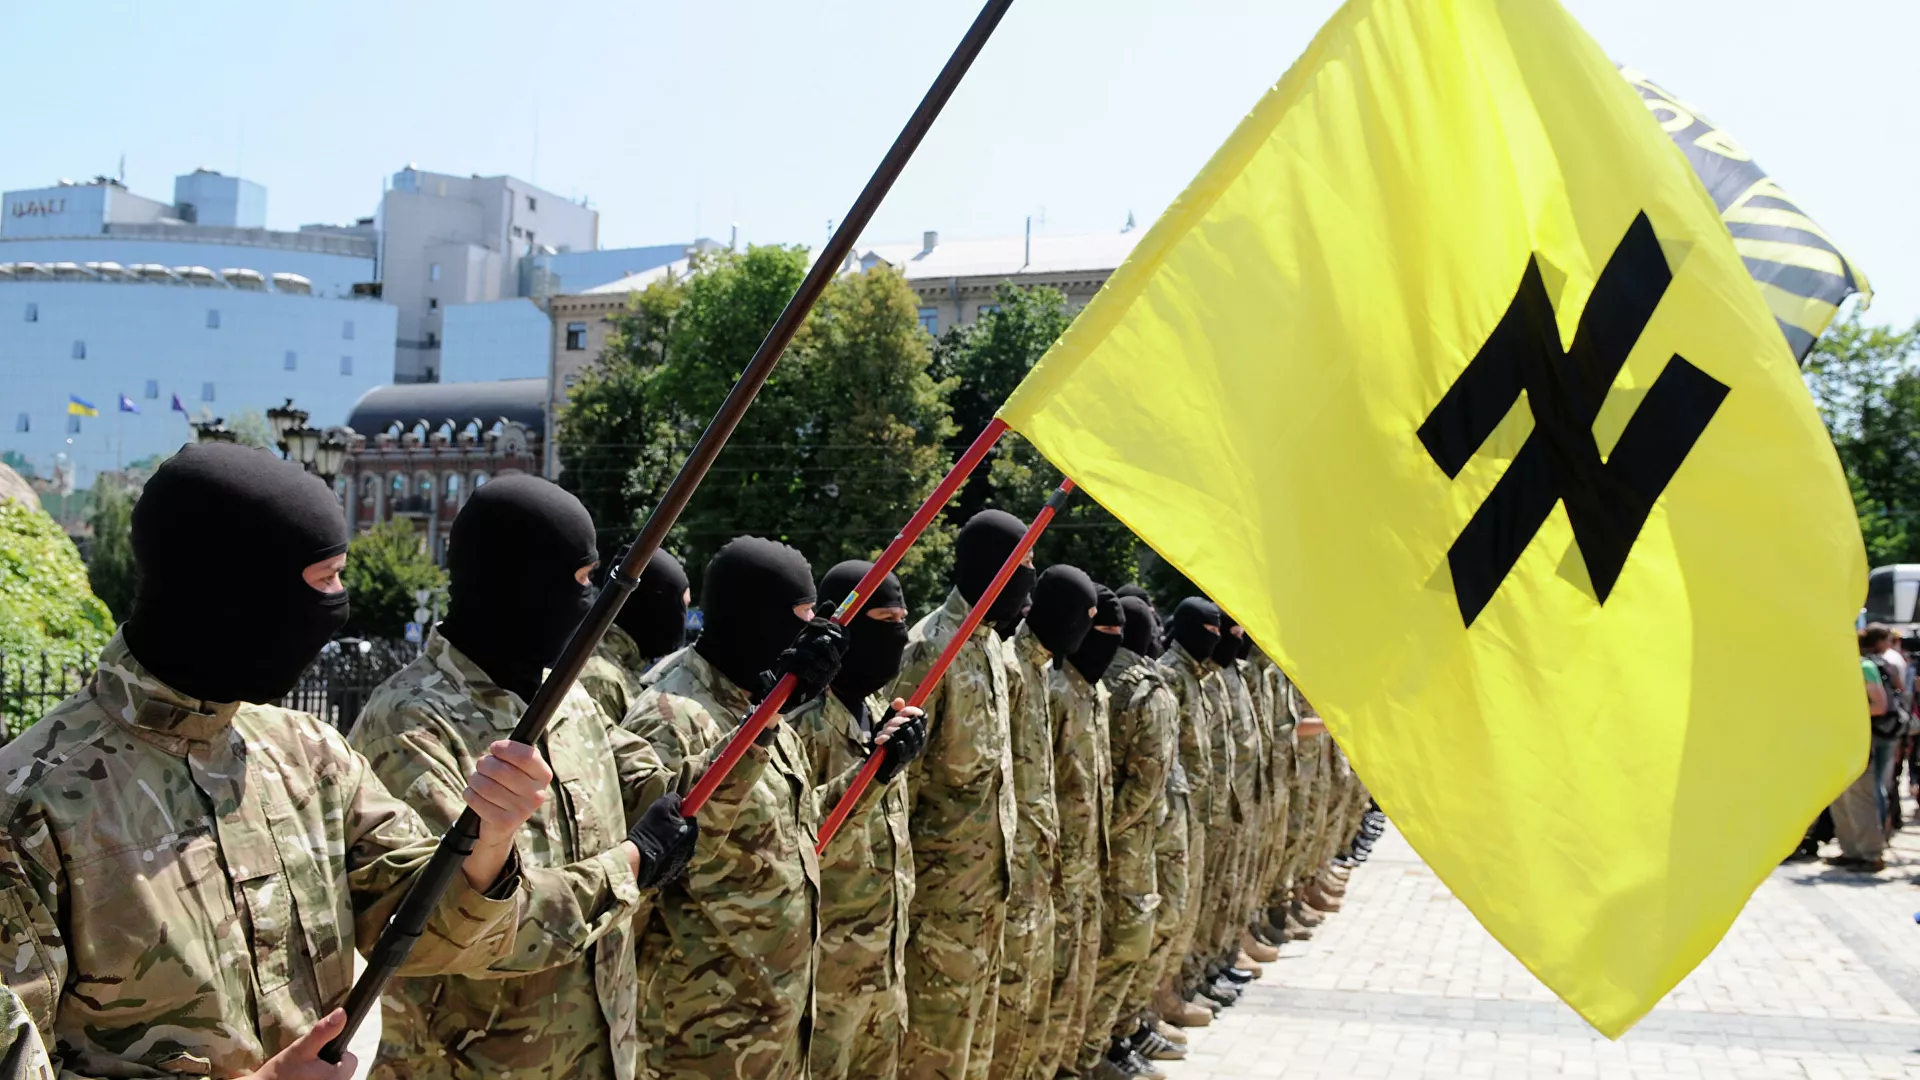  El líder neonazi de Azov amenaza con bombardear una marcha en honor a los que combatieron el nazismo